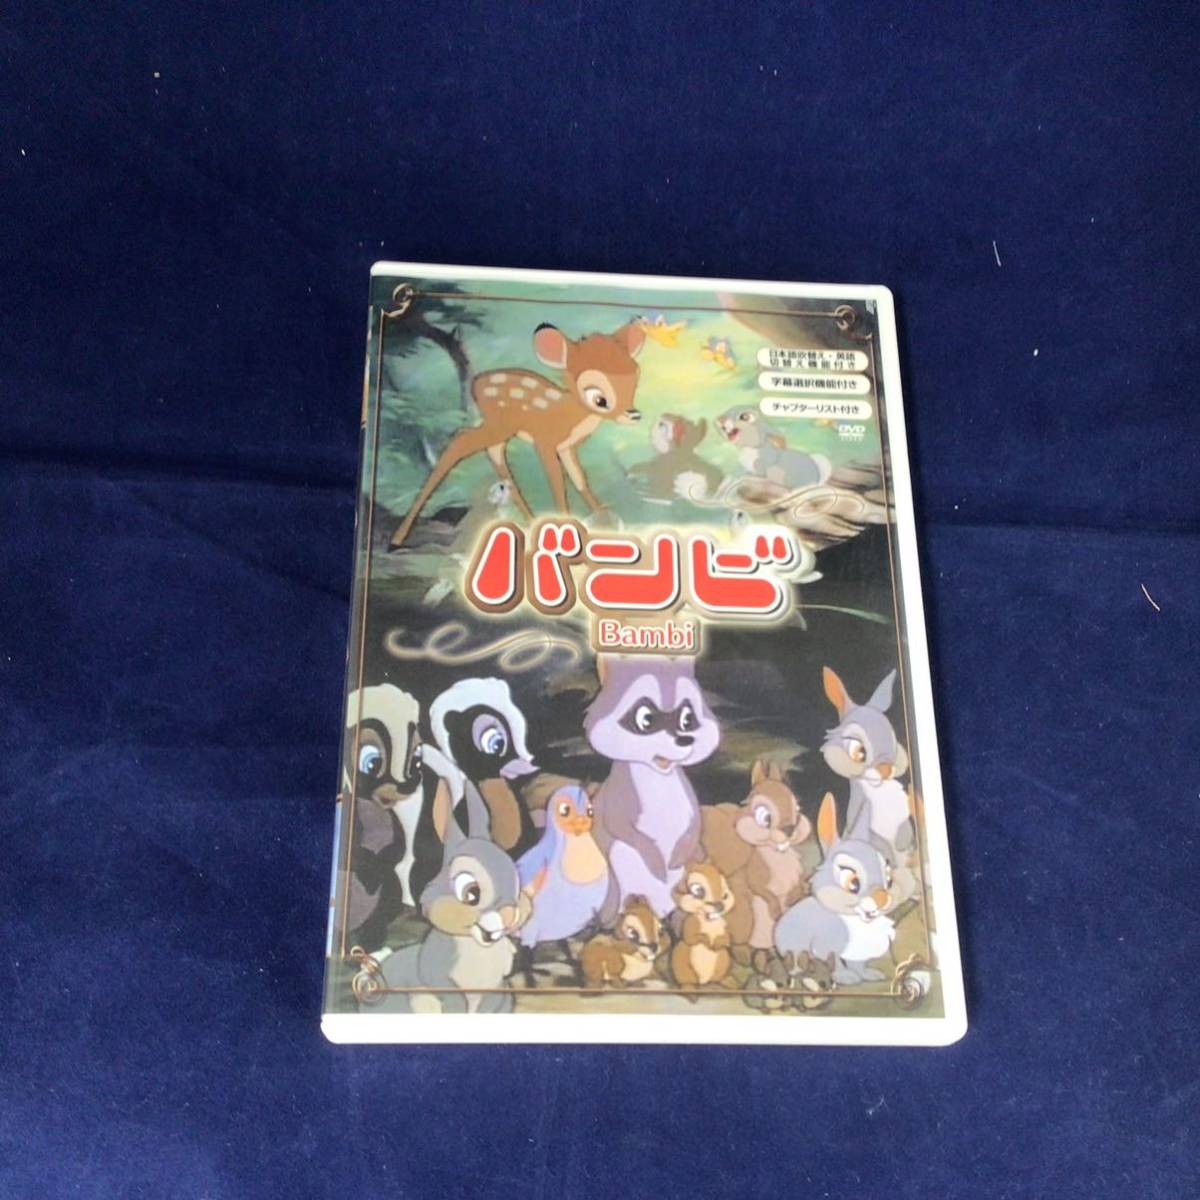 Ts20, Disney DVD Dumbo 